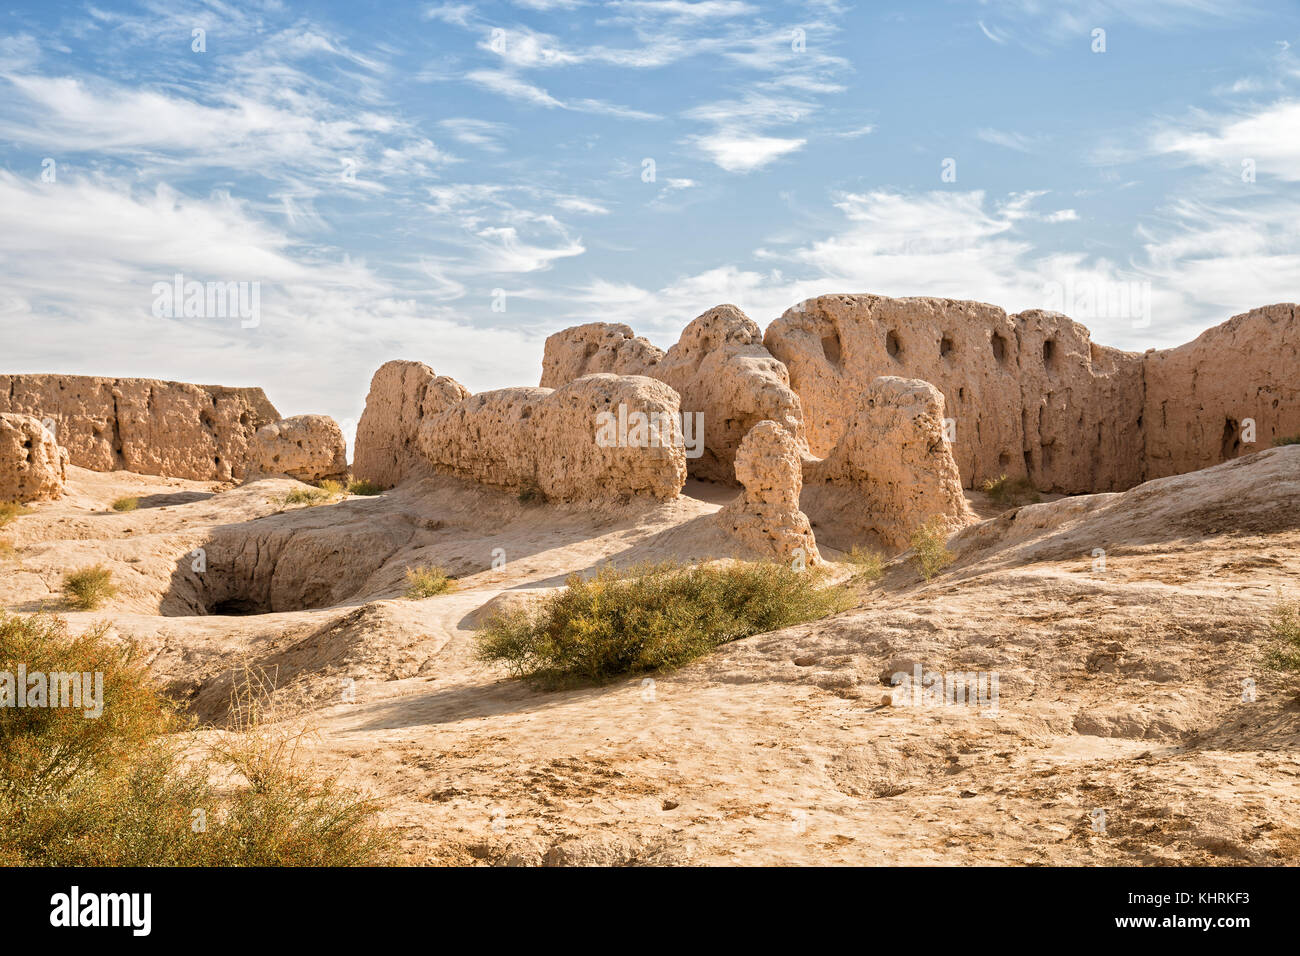 Ruinen der Festung kyzyl - Kala des alten Choresm in Usbekistan kyzylkum Wüste. Stockfoto